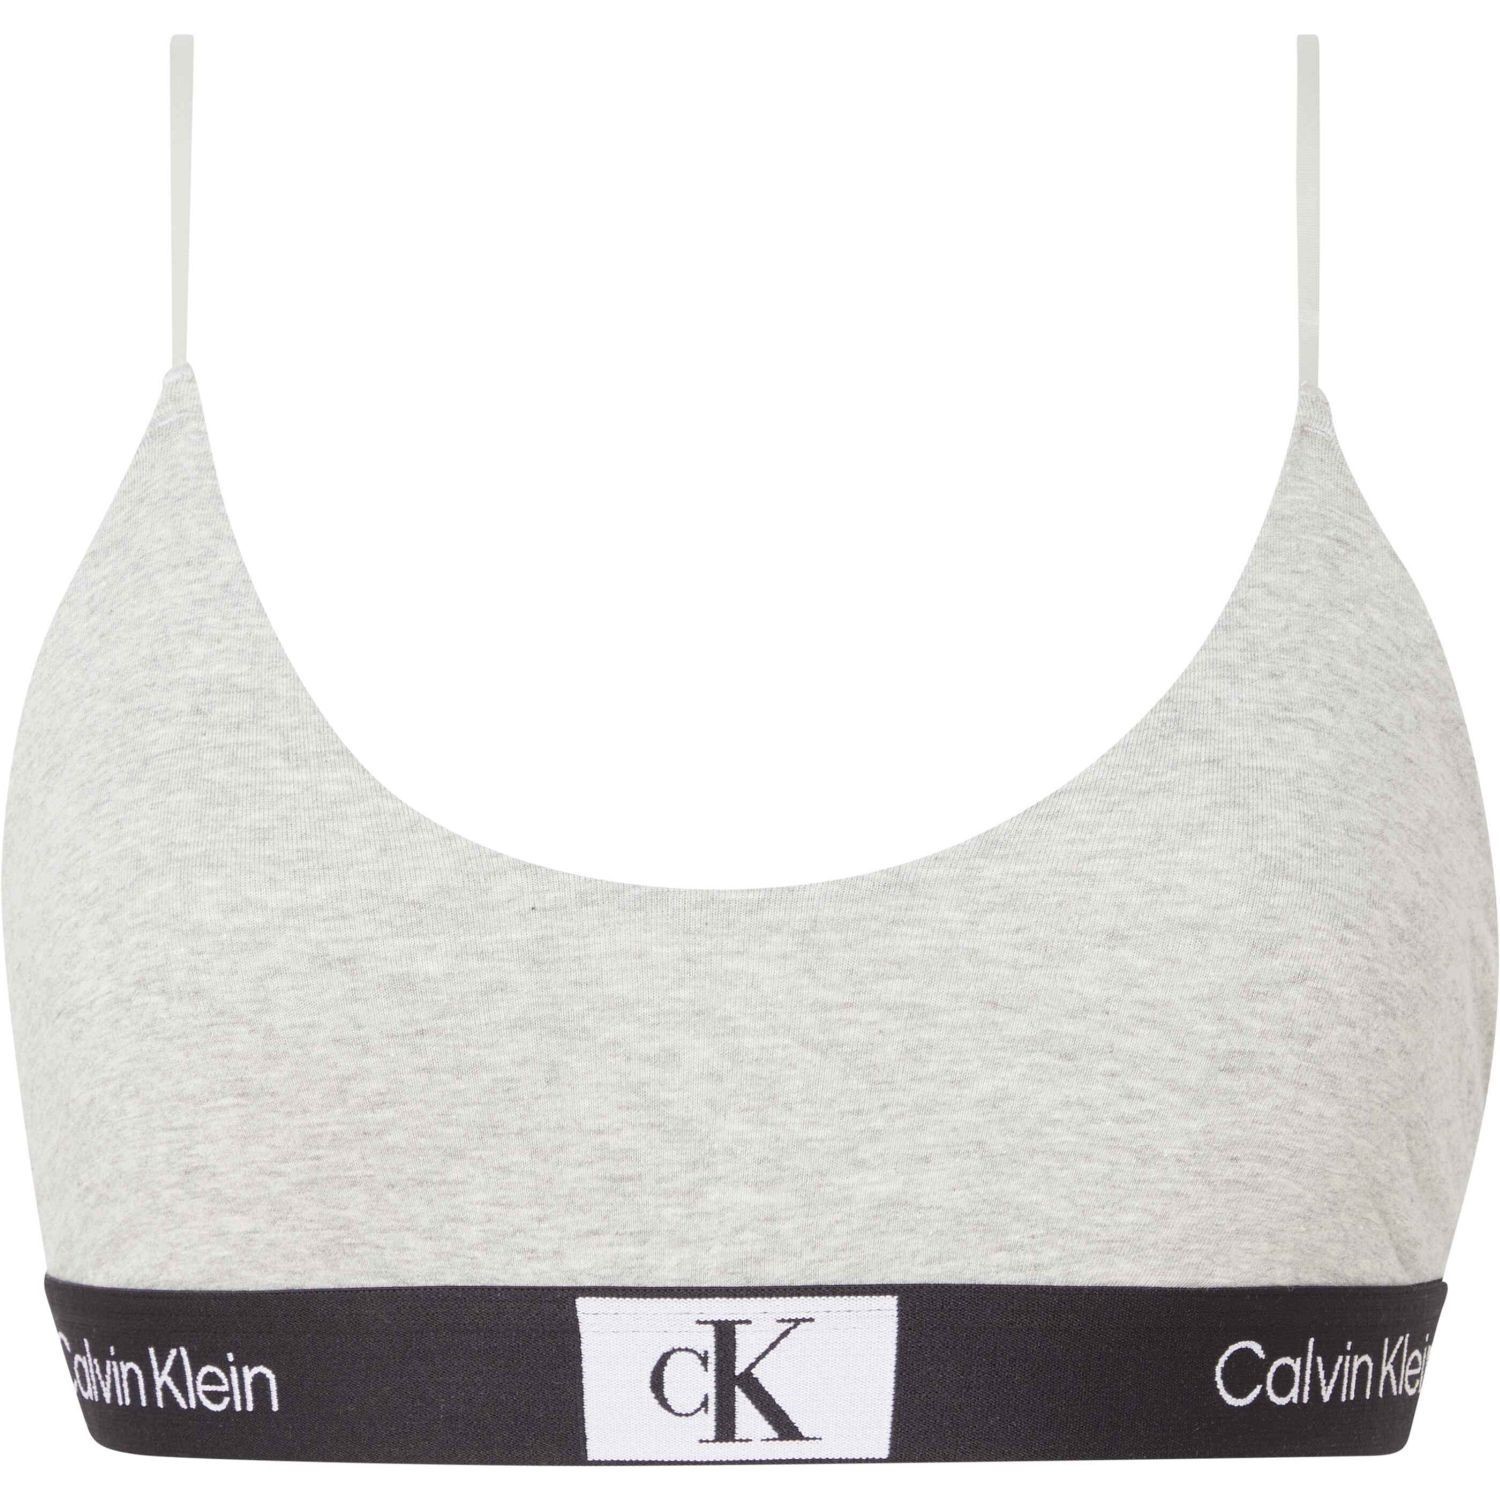 Calvin Klein CK96 Unlined Bralette - Bralette - BH - Underkläder -  Timarco.se